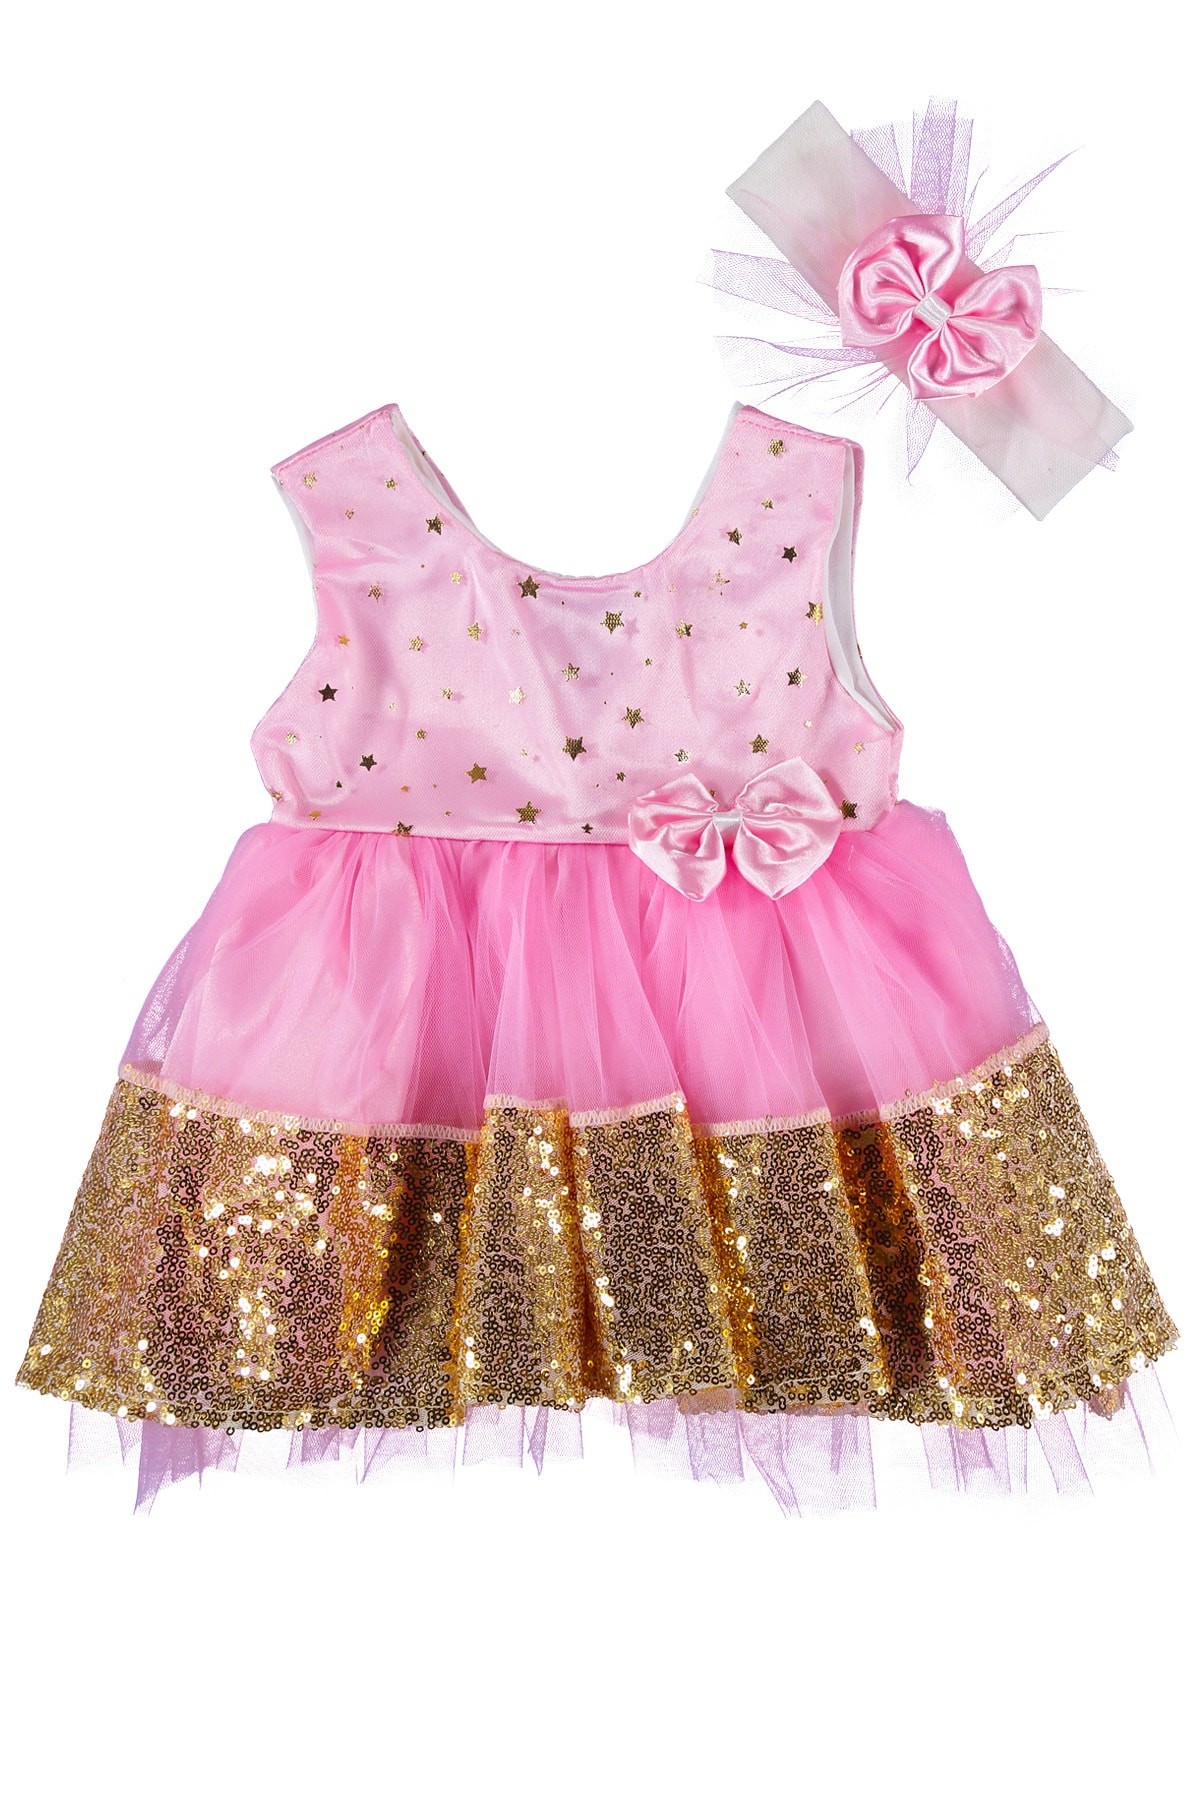 Altın Pullu, Özel Gün Elbisesi, Kız Bebek Elbise – Pembe – Saç Bantlı Bebek Elbise Takım